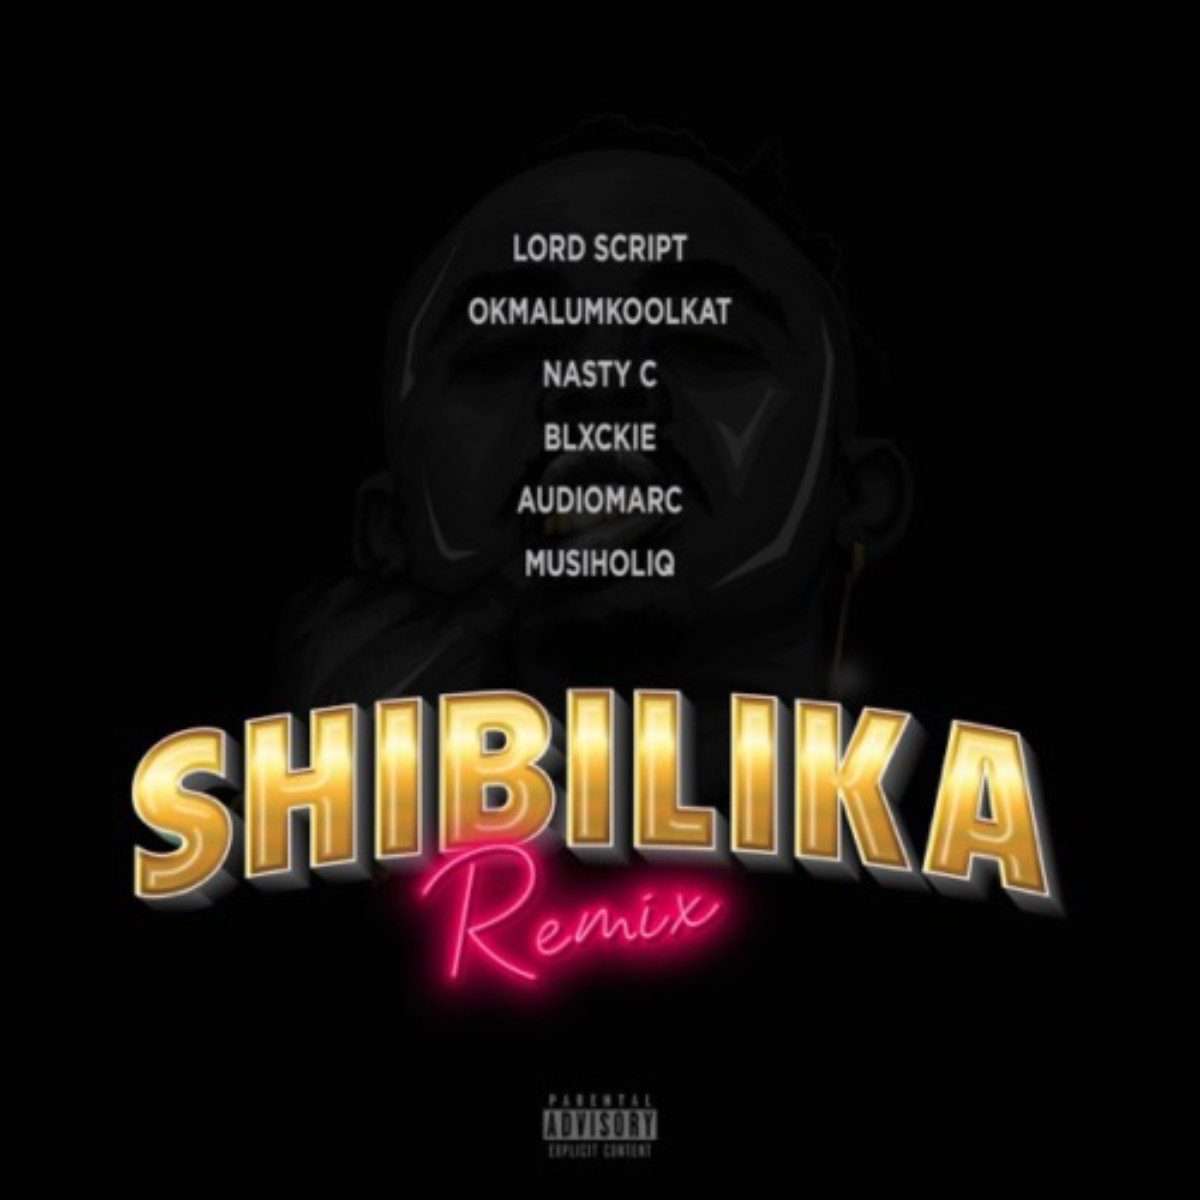 Lord Script Shibilika Remix mp3 image